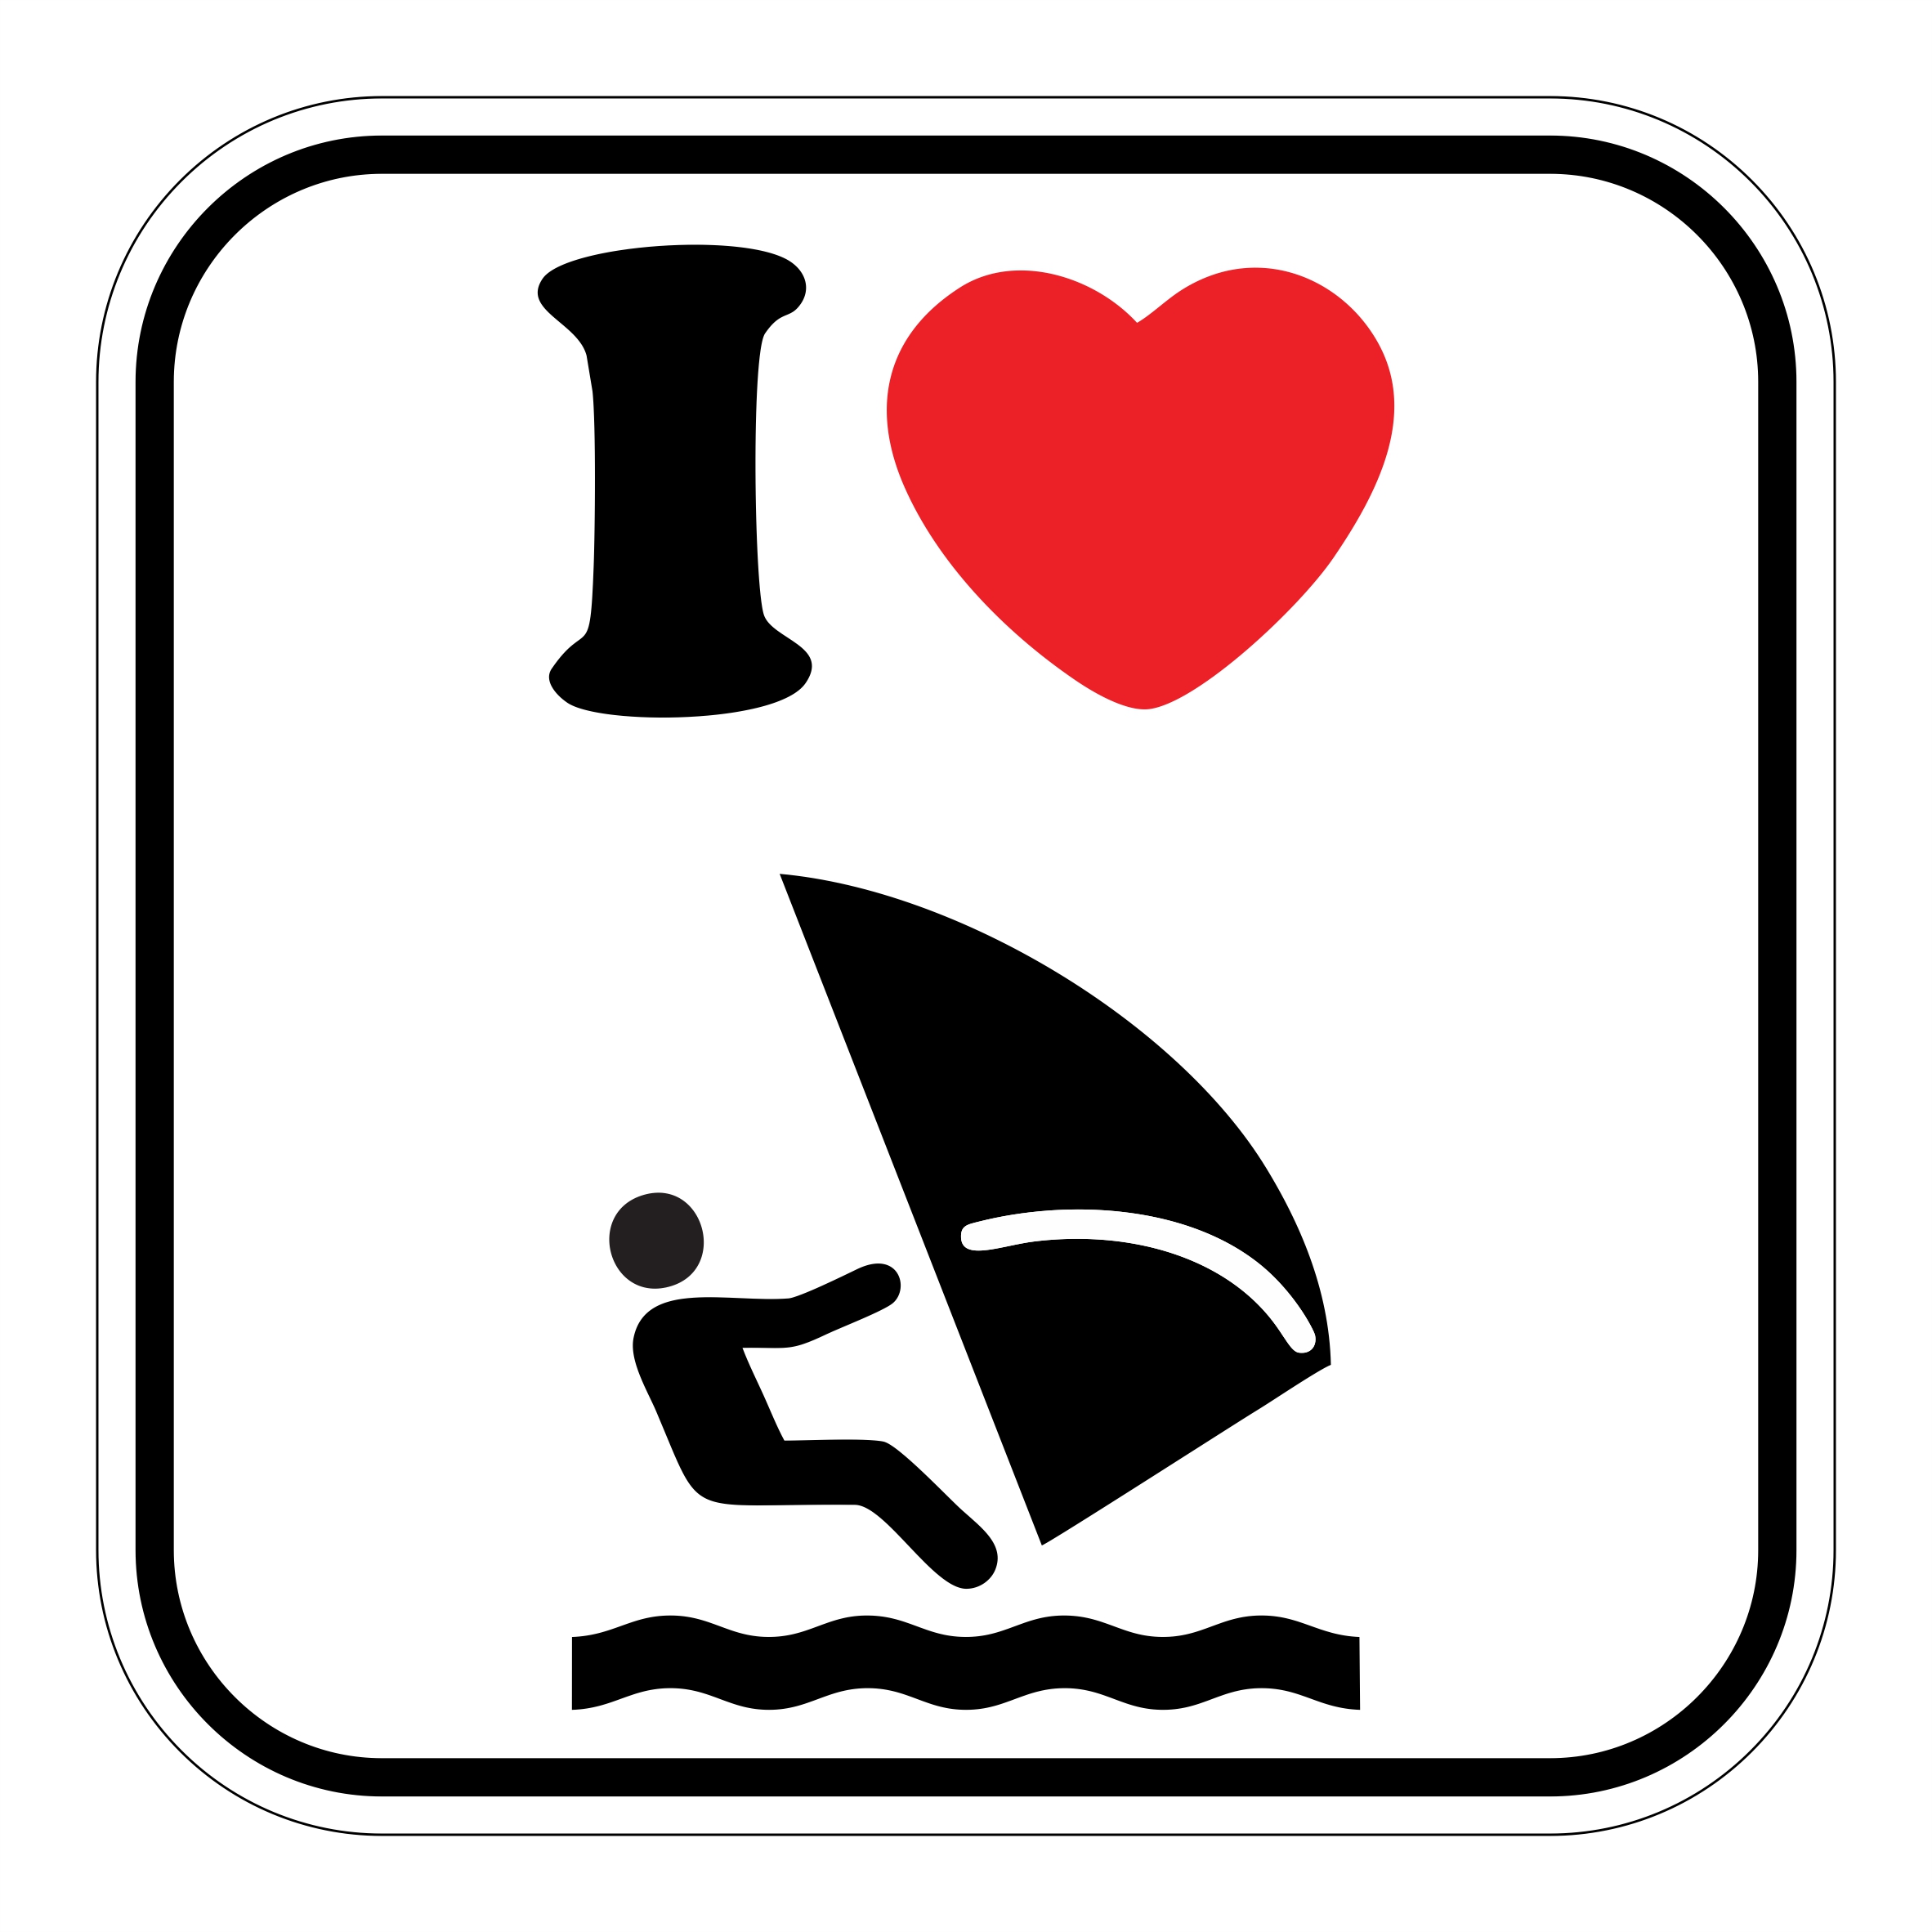 I Love Surfen sticker 10cm x 10cm